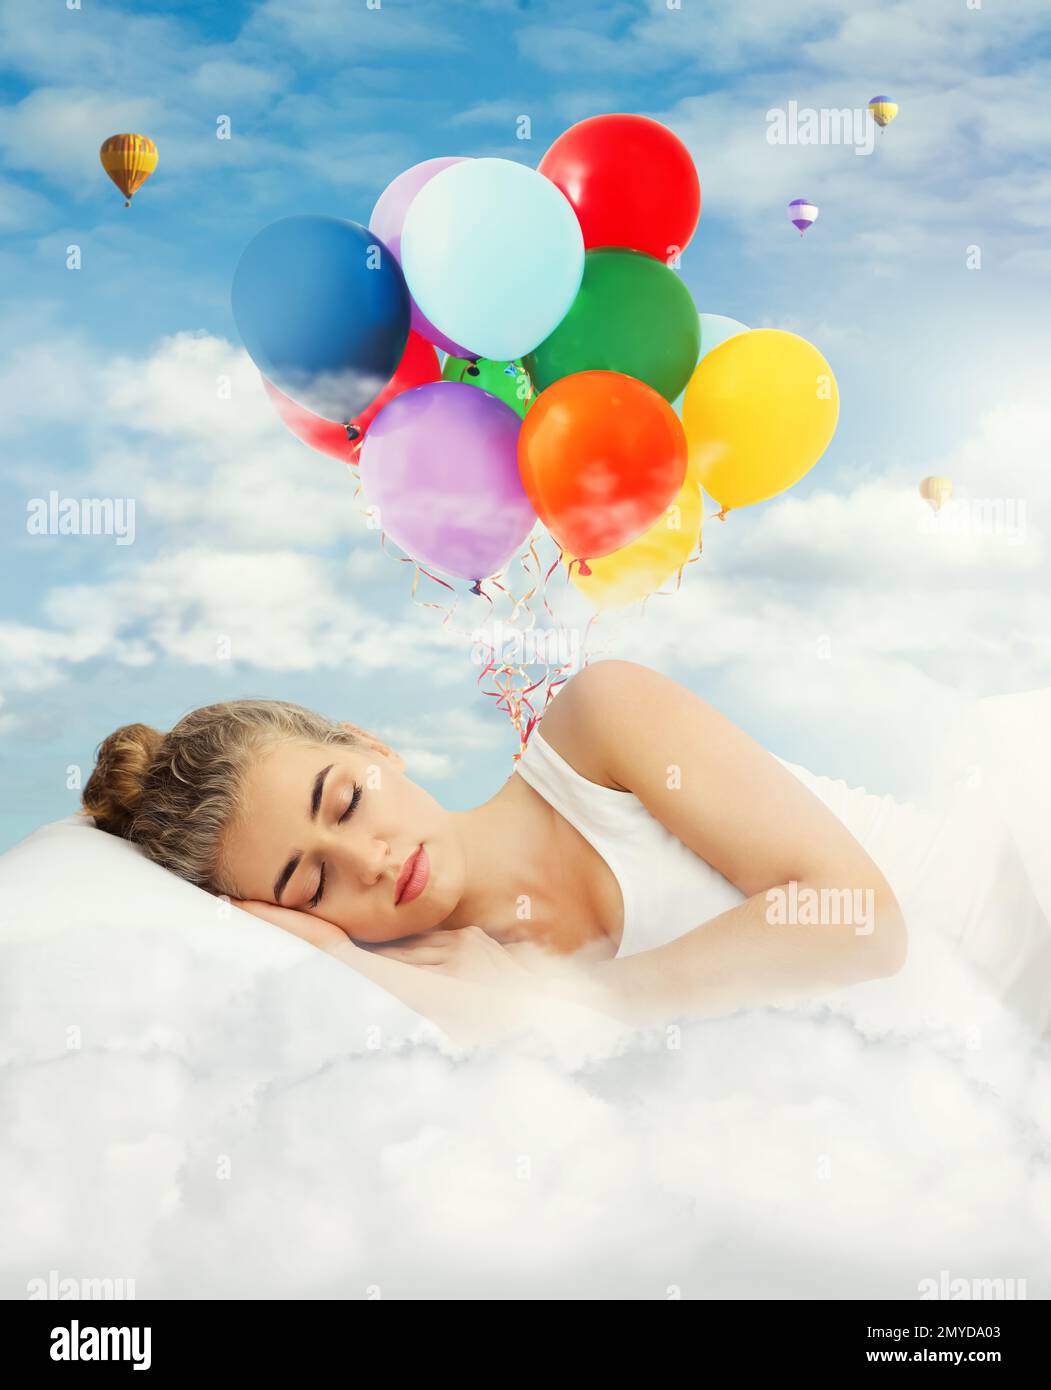 Jeune belle femme dormant dans le lit. Ballons d'air lumineux dans un ciel bleu nuageux - doux rêves Banque D'Images